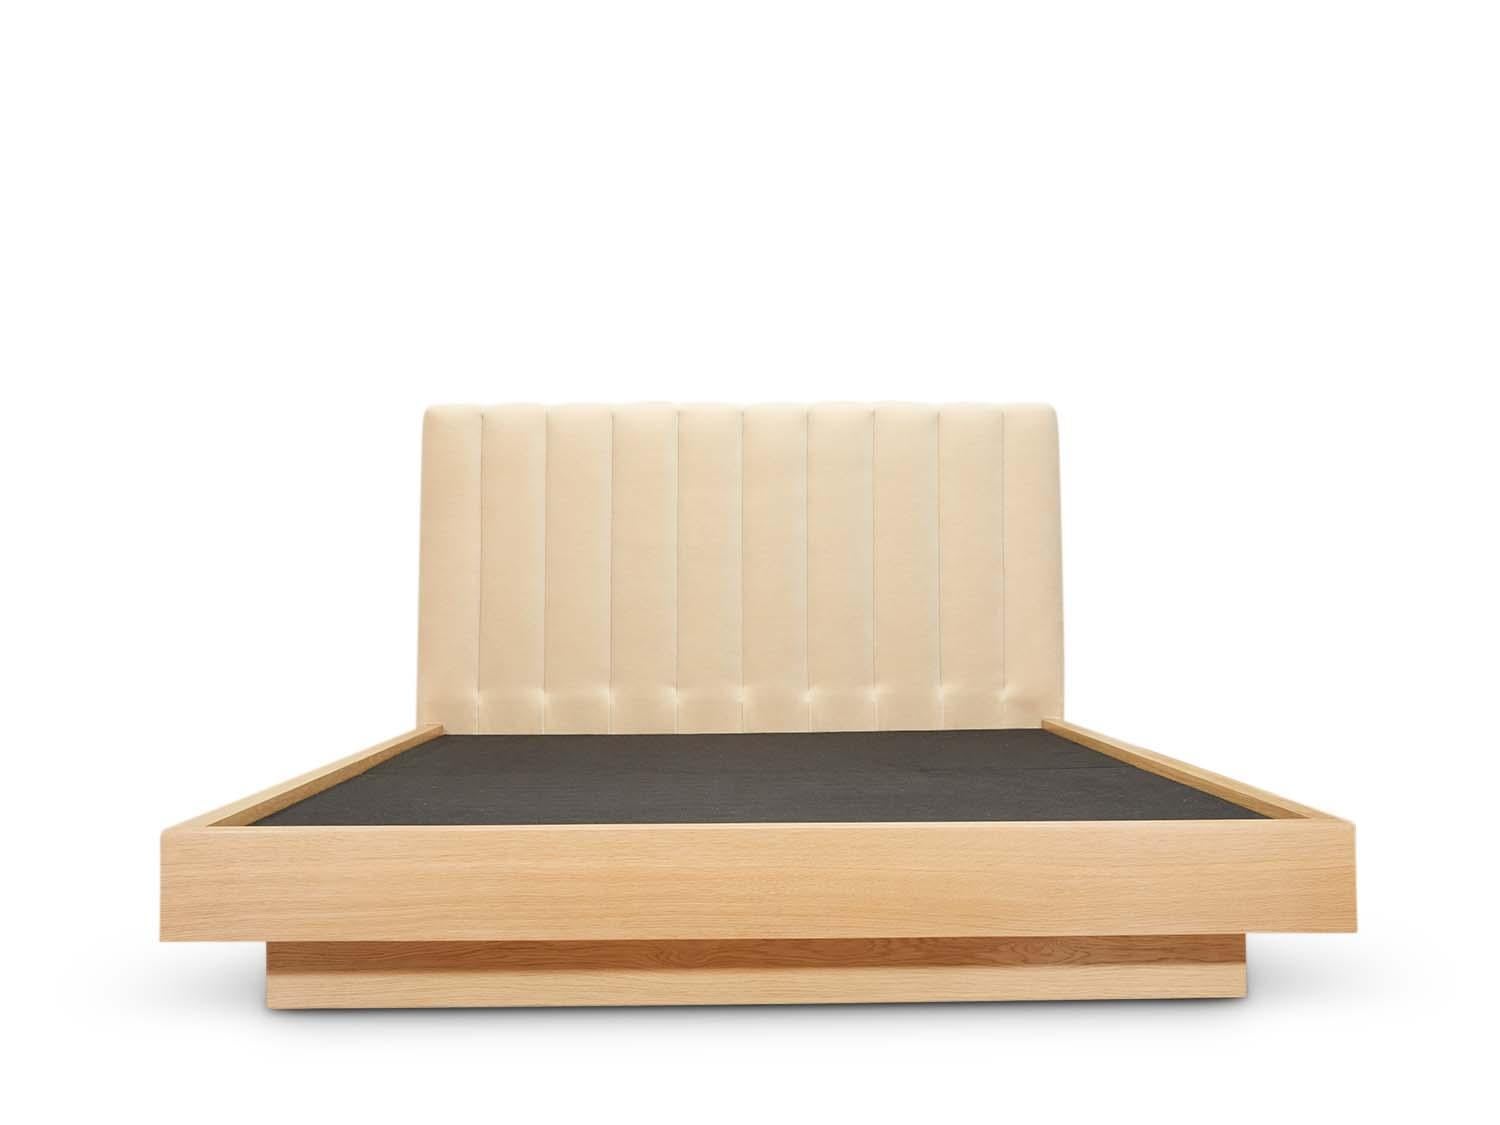 Das Bett Capitan verfügt über ein Kopfteil mit Kanaltuft und eine minimalistische, japanisch inspirierte Holzplattform. Erhältlich in amerikanischem Nussbaum oder Weißeiche. Größe Queen.

Die Lawson-Fenning Collection'S wird in Los Angeles,